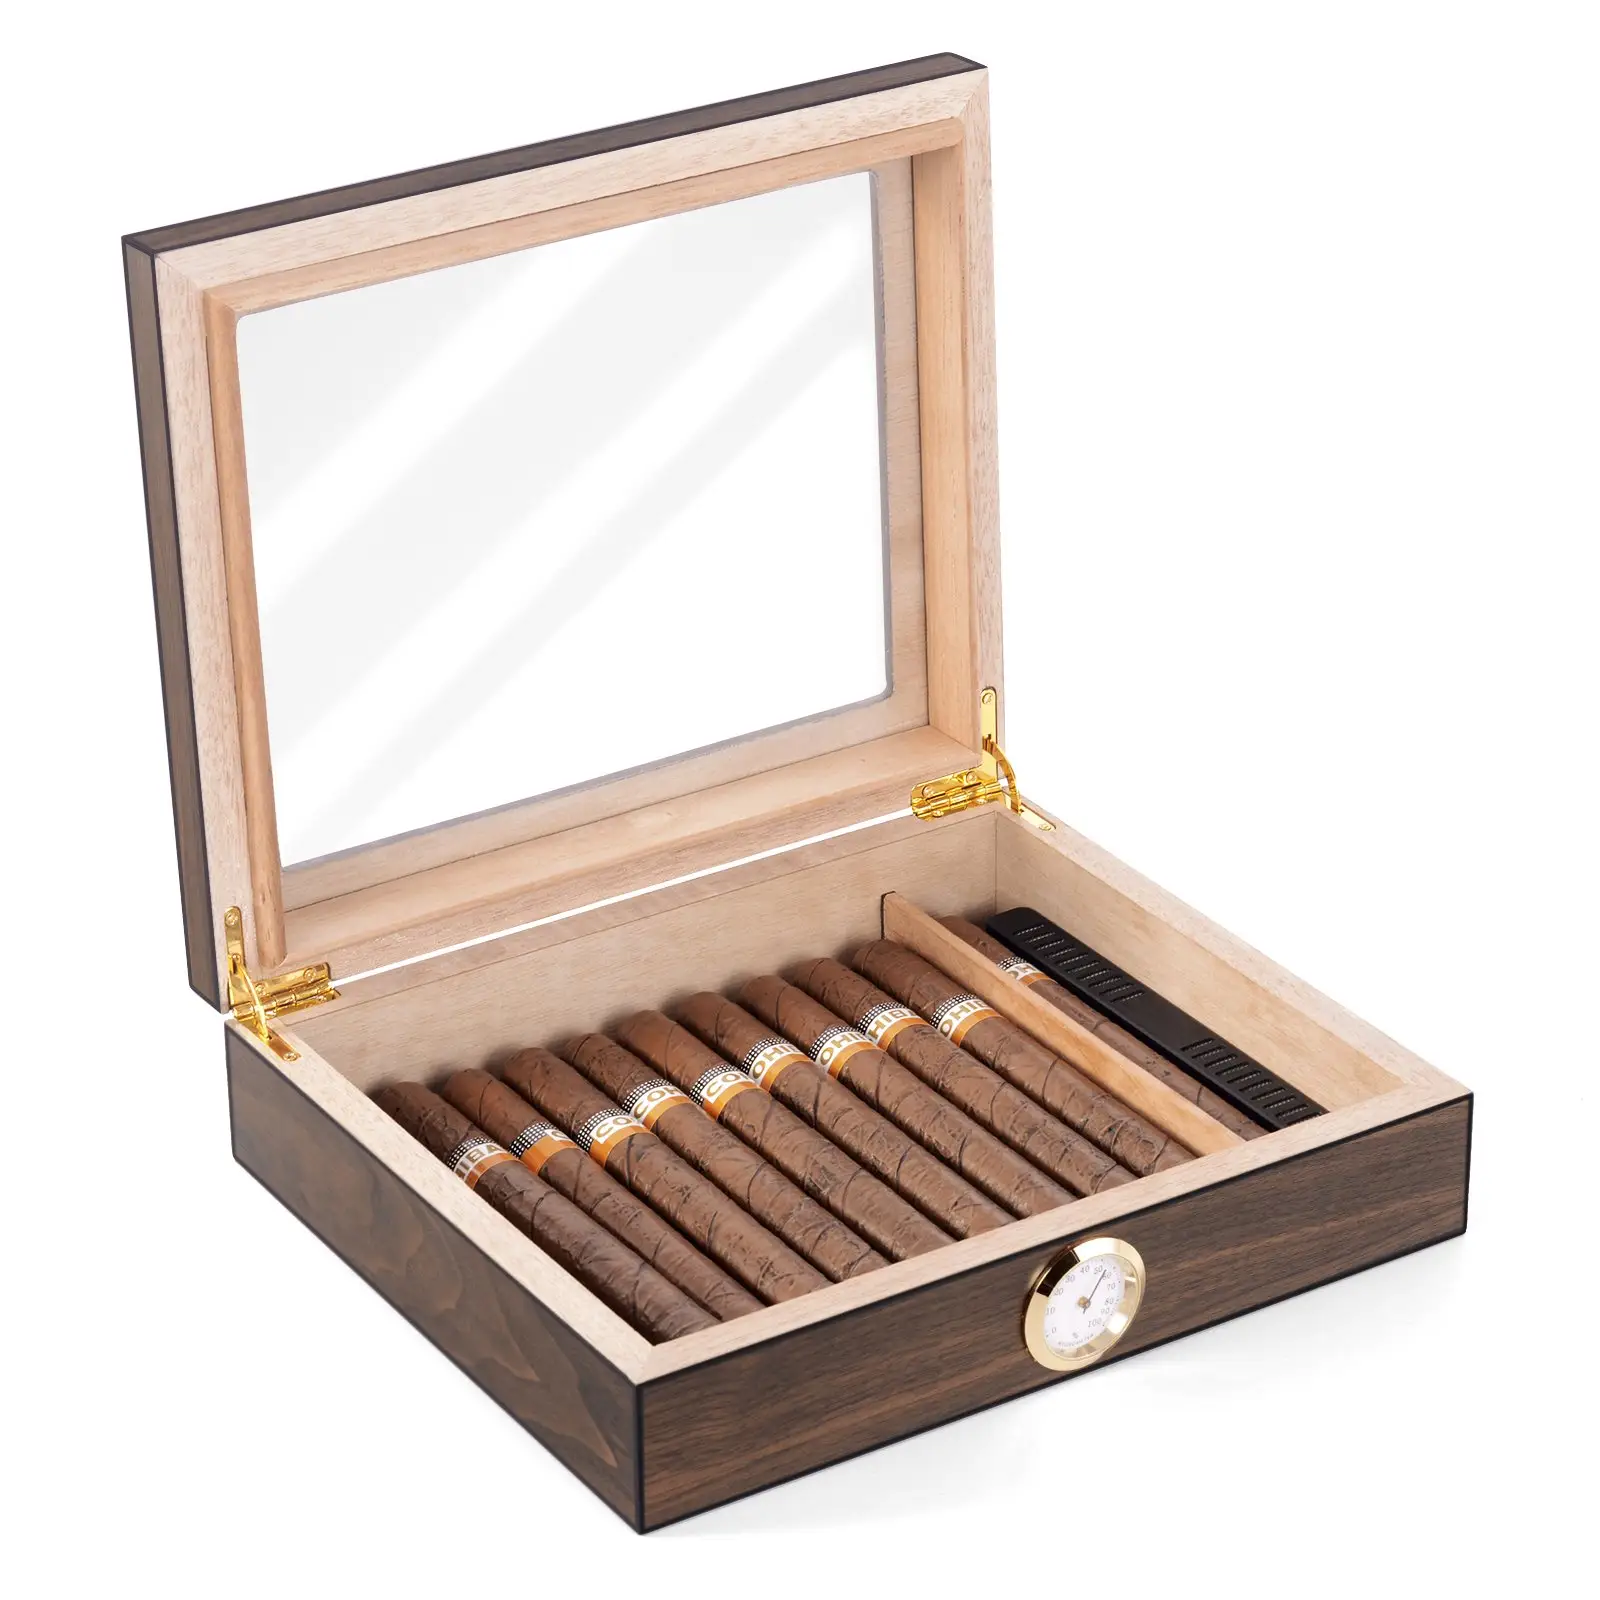 सिगार Humidor ग्लास शीर्ष सिगार बॉक्स आर्द्रतामापी Humidifier और विभक्त डेस्कटॉप देवदार लकड़ी भंडारण के मामले के साथ 20-30 रखती है सिगार